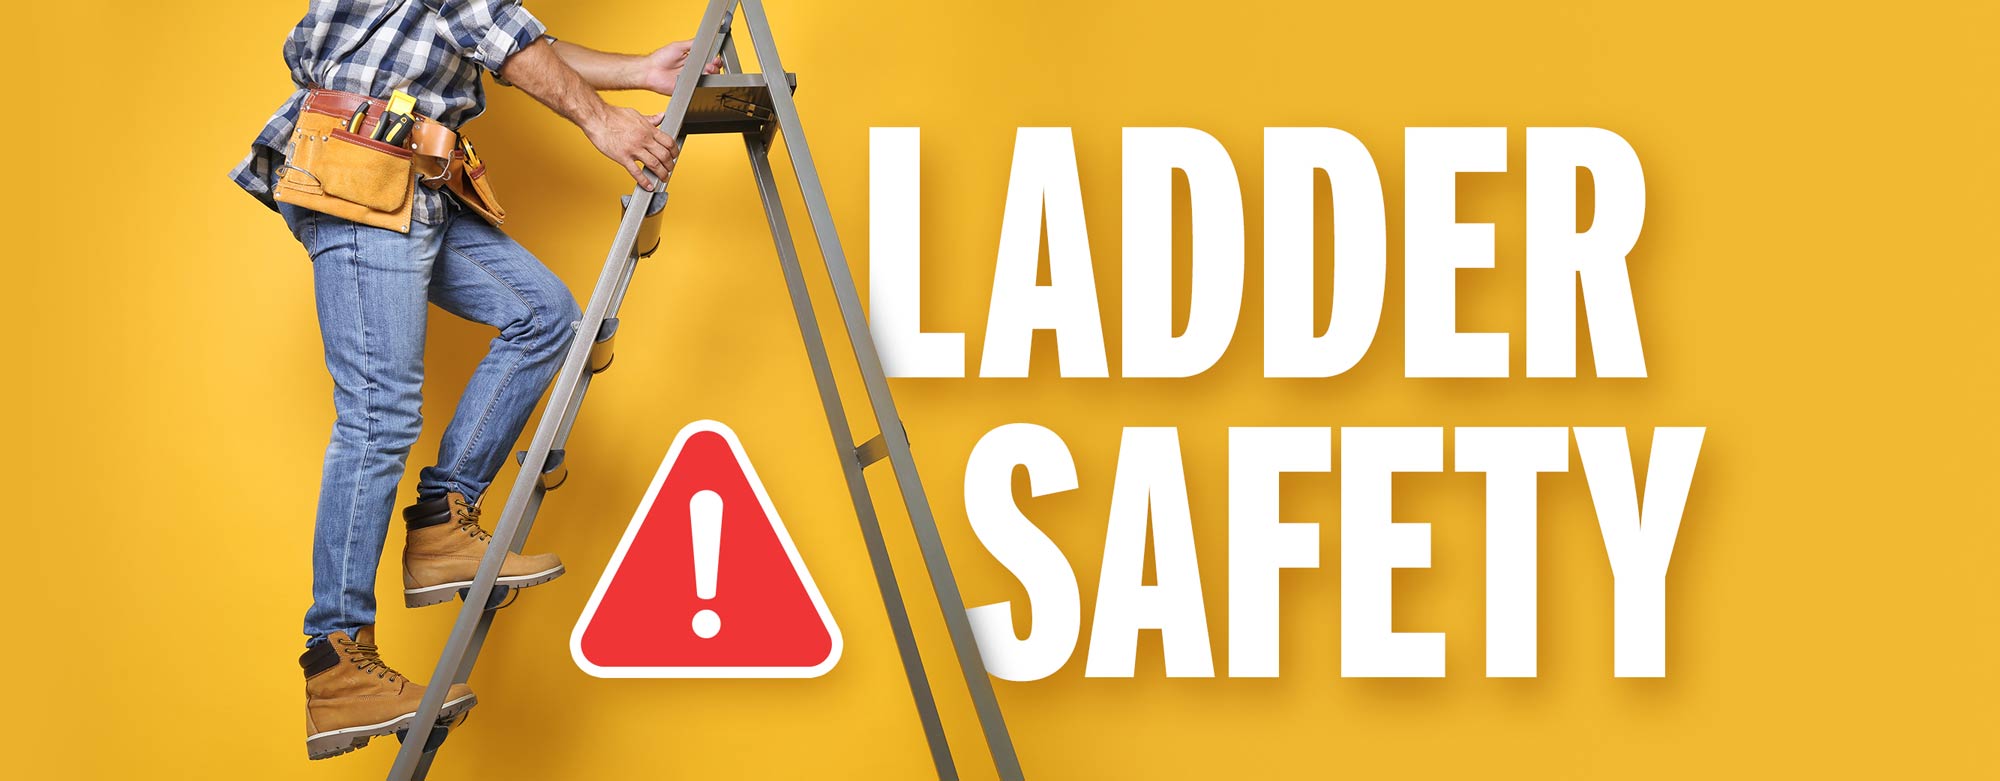 Ladder Safety: OSHA Guidelines & Safe Practices